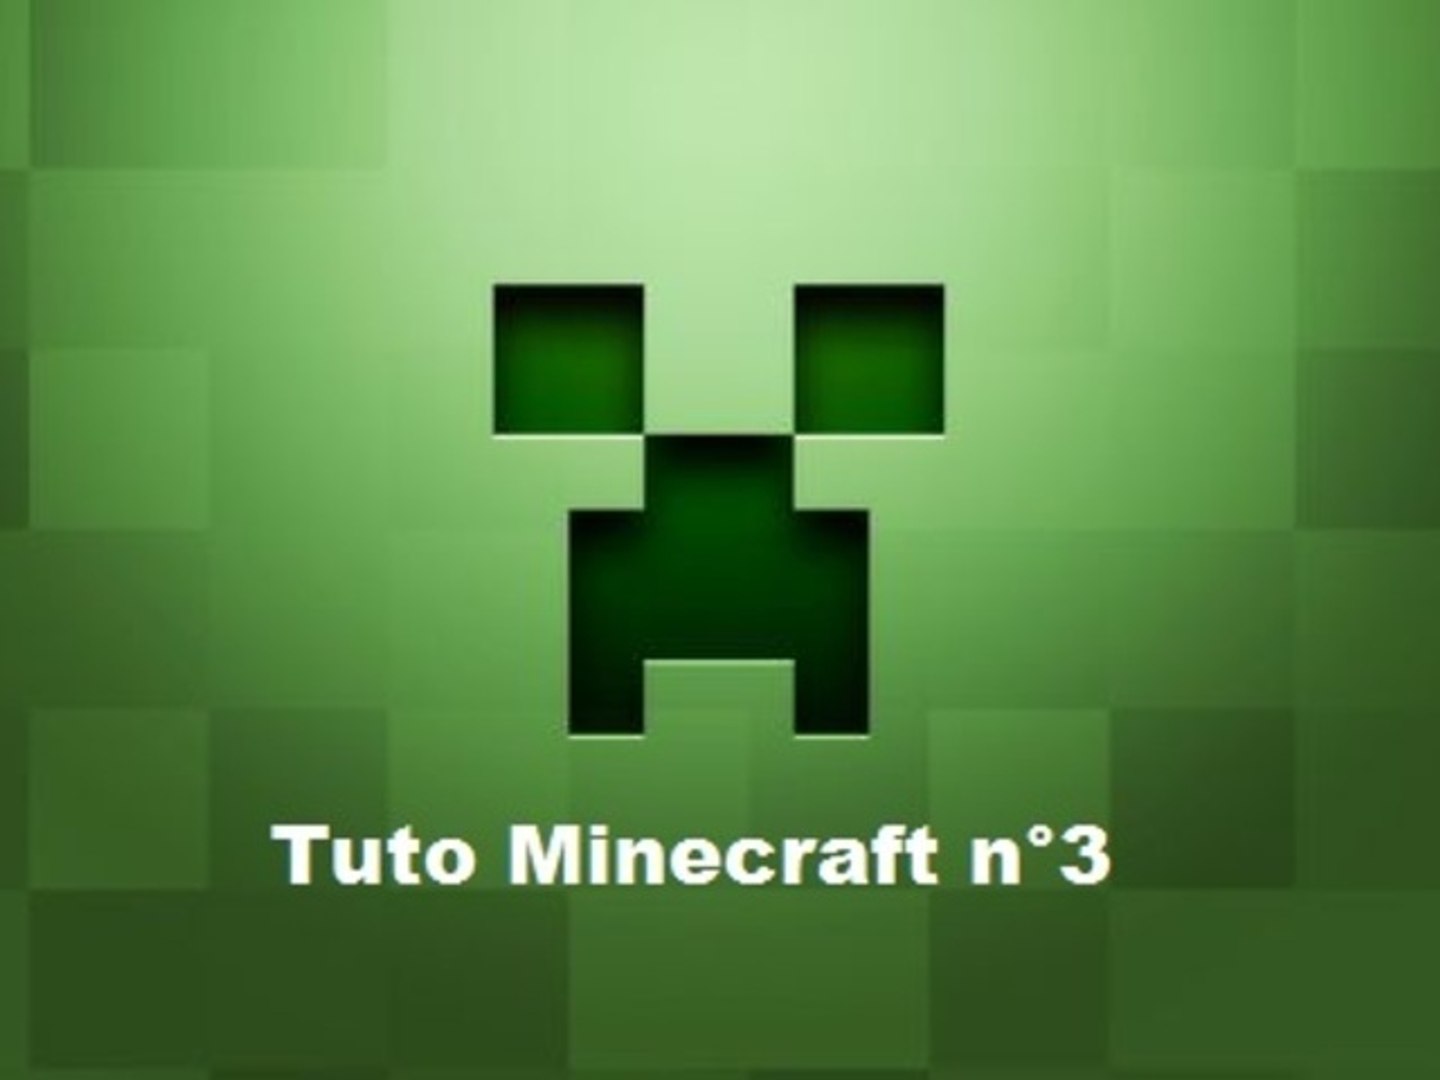 Tuto Minecraft n°3 : Comment créer un serveur Minecraft ? - Vidéo  Dailymotion